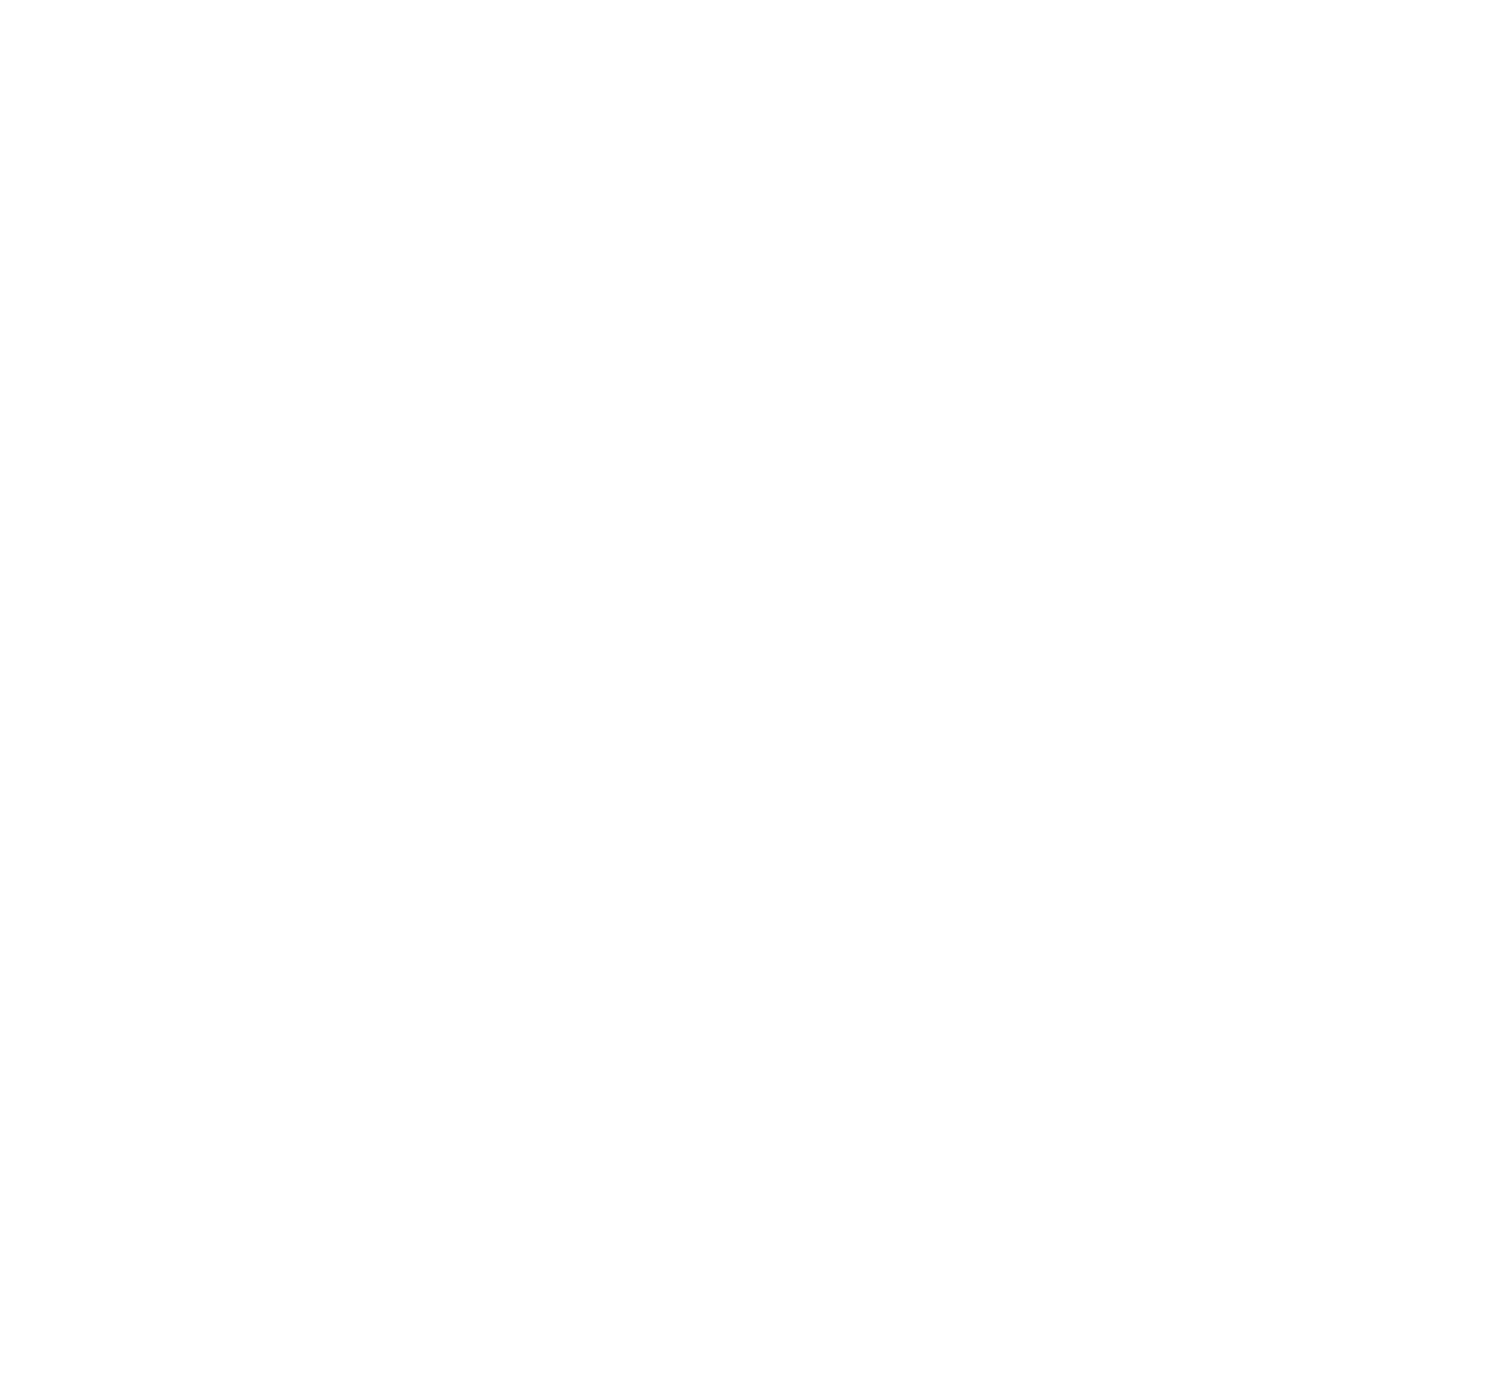 Island Hose & Fittings Ltd.